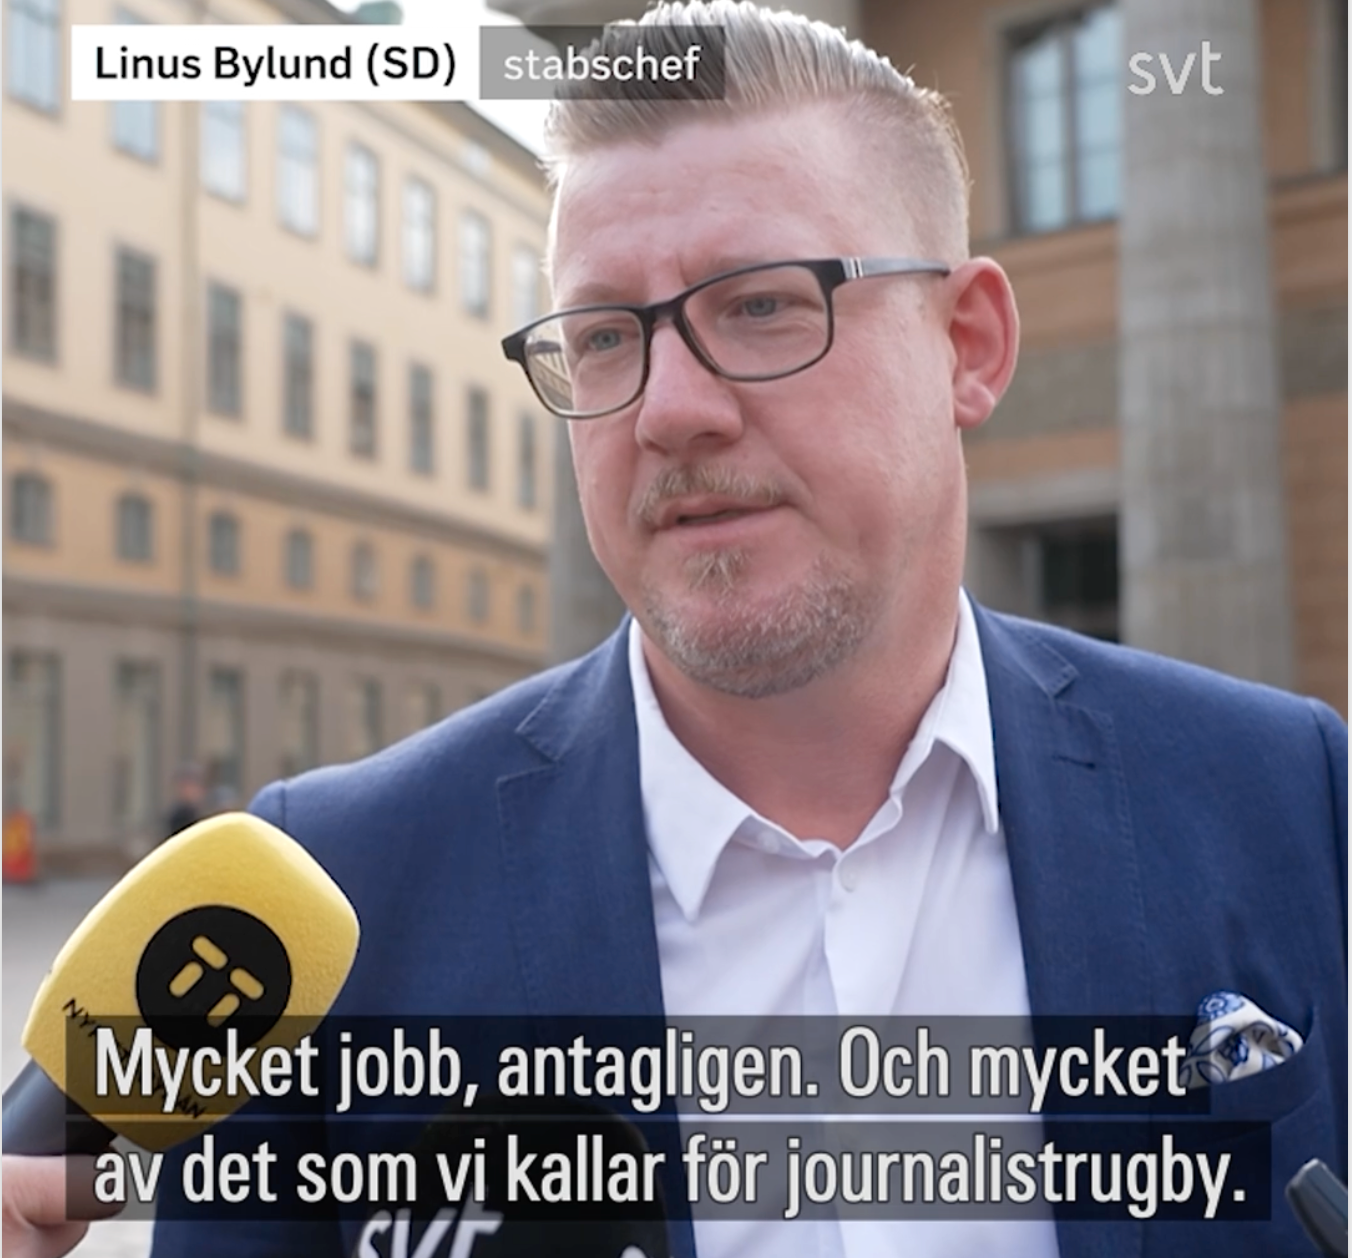 ”Både Linus Bylund och hans parti historiskt haft en minst sagt komplicerad relation till medier och journalistik”, skriver Martin Schori. 